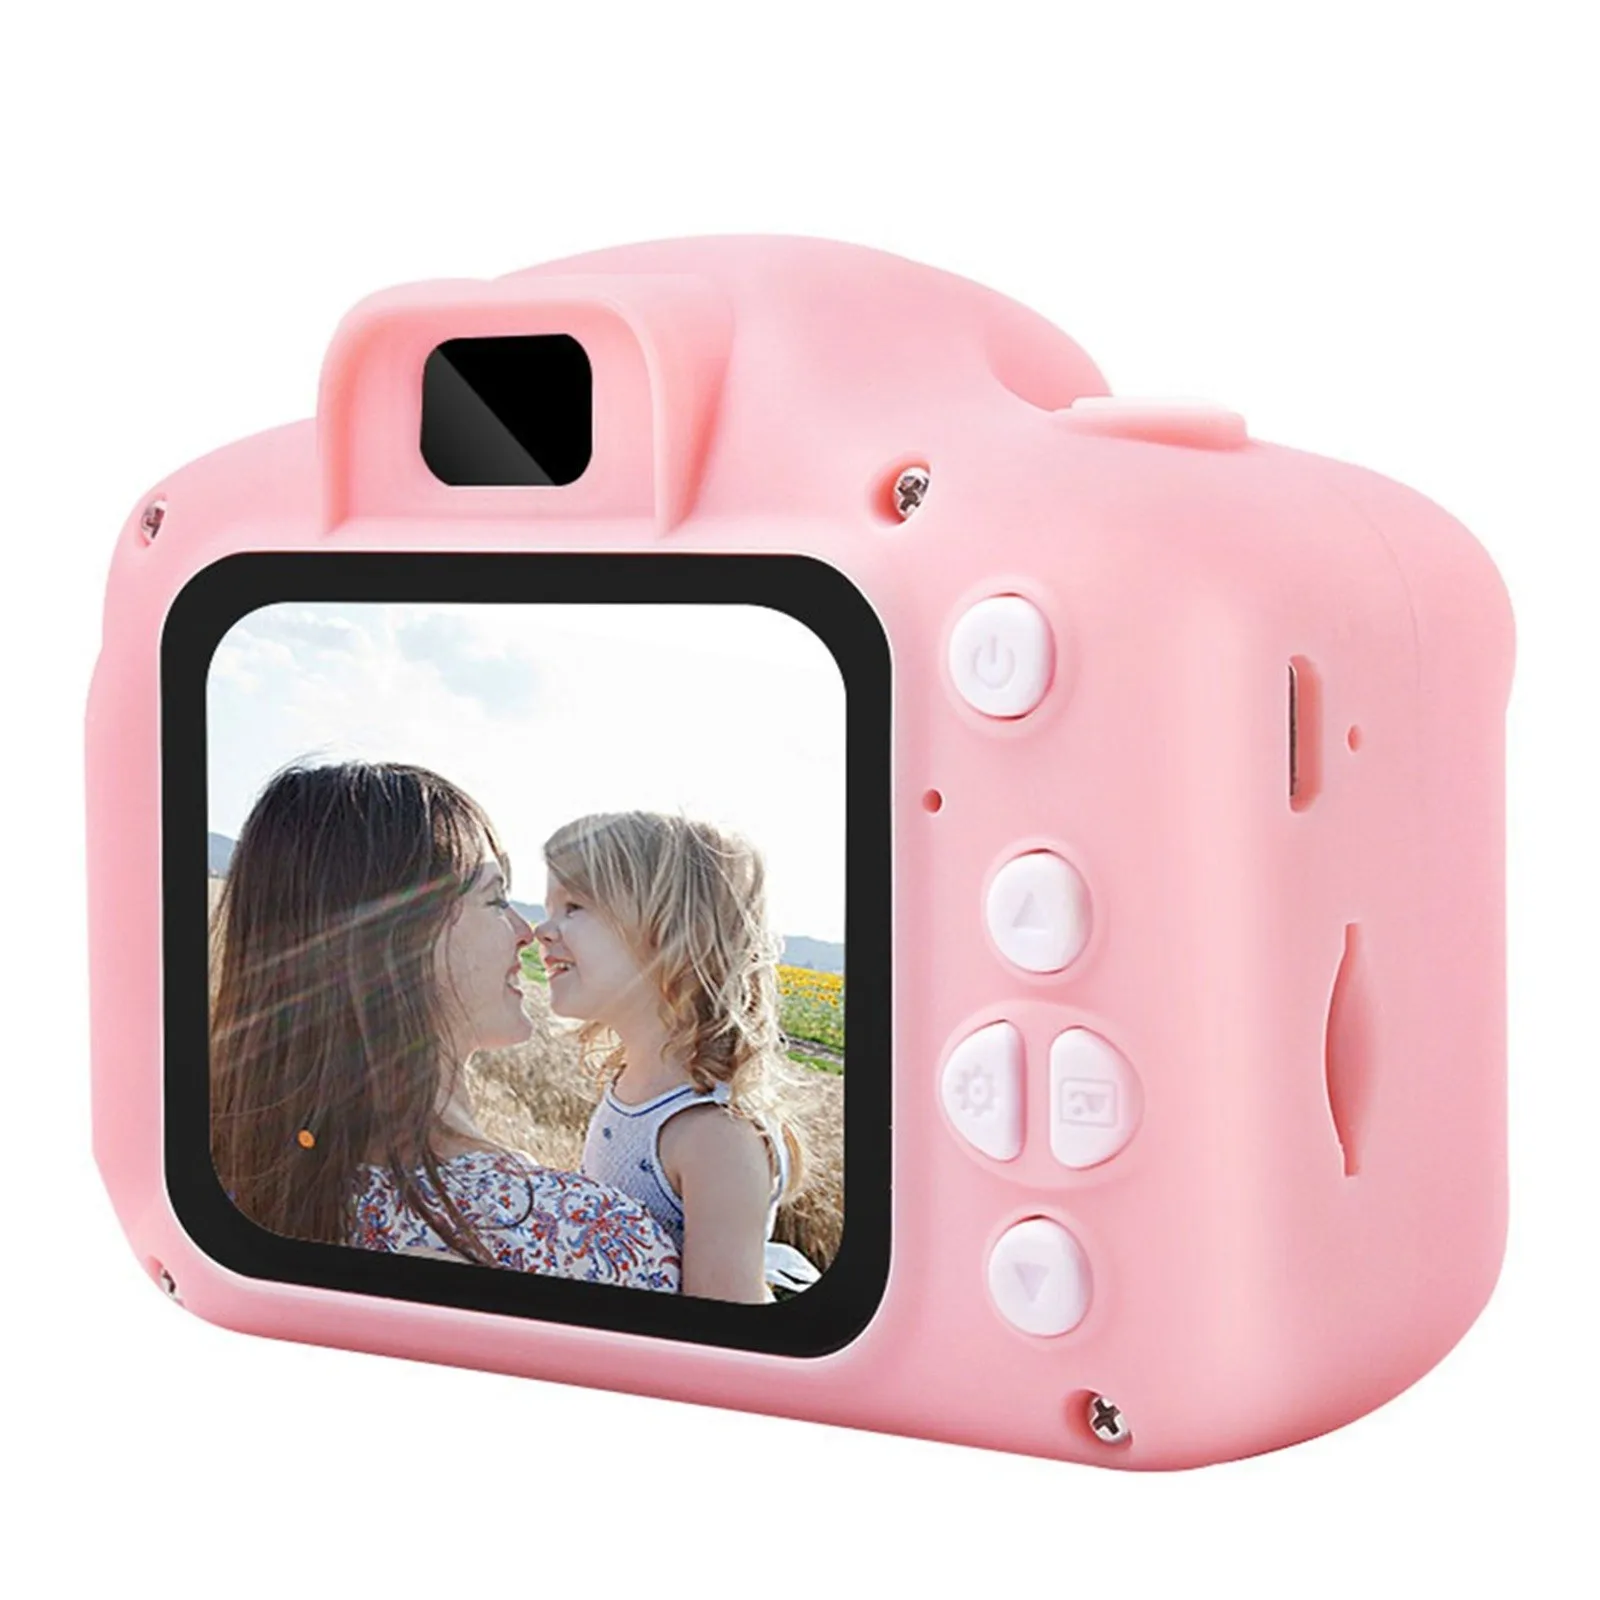 

Милая Детская мини цифровая фото 1080P видеокамера 2,0 дюймов HD экран маленькая игрушка видеокамера микро камера лучший подарок для детей